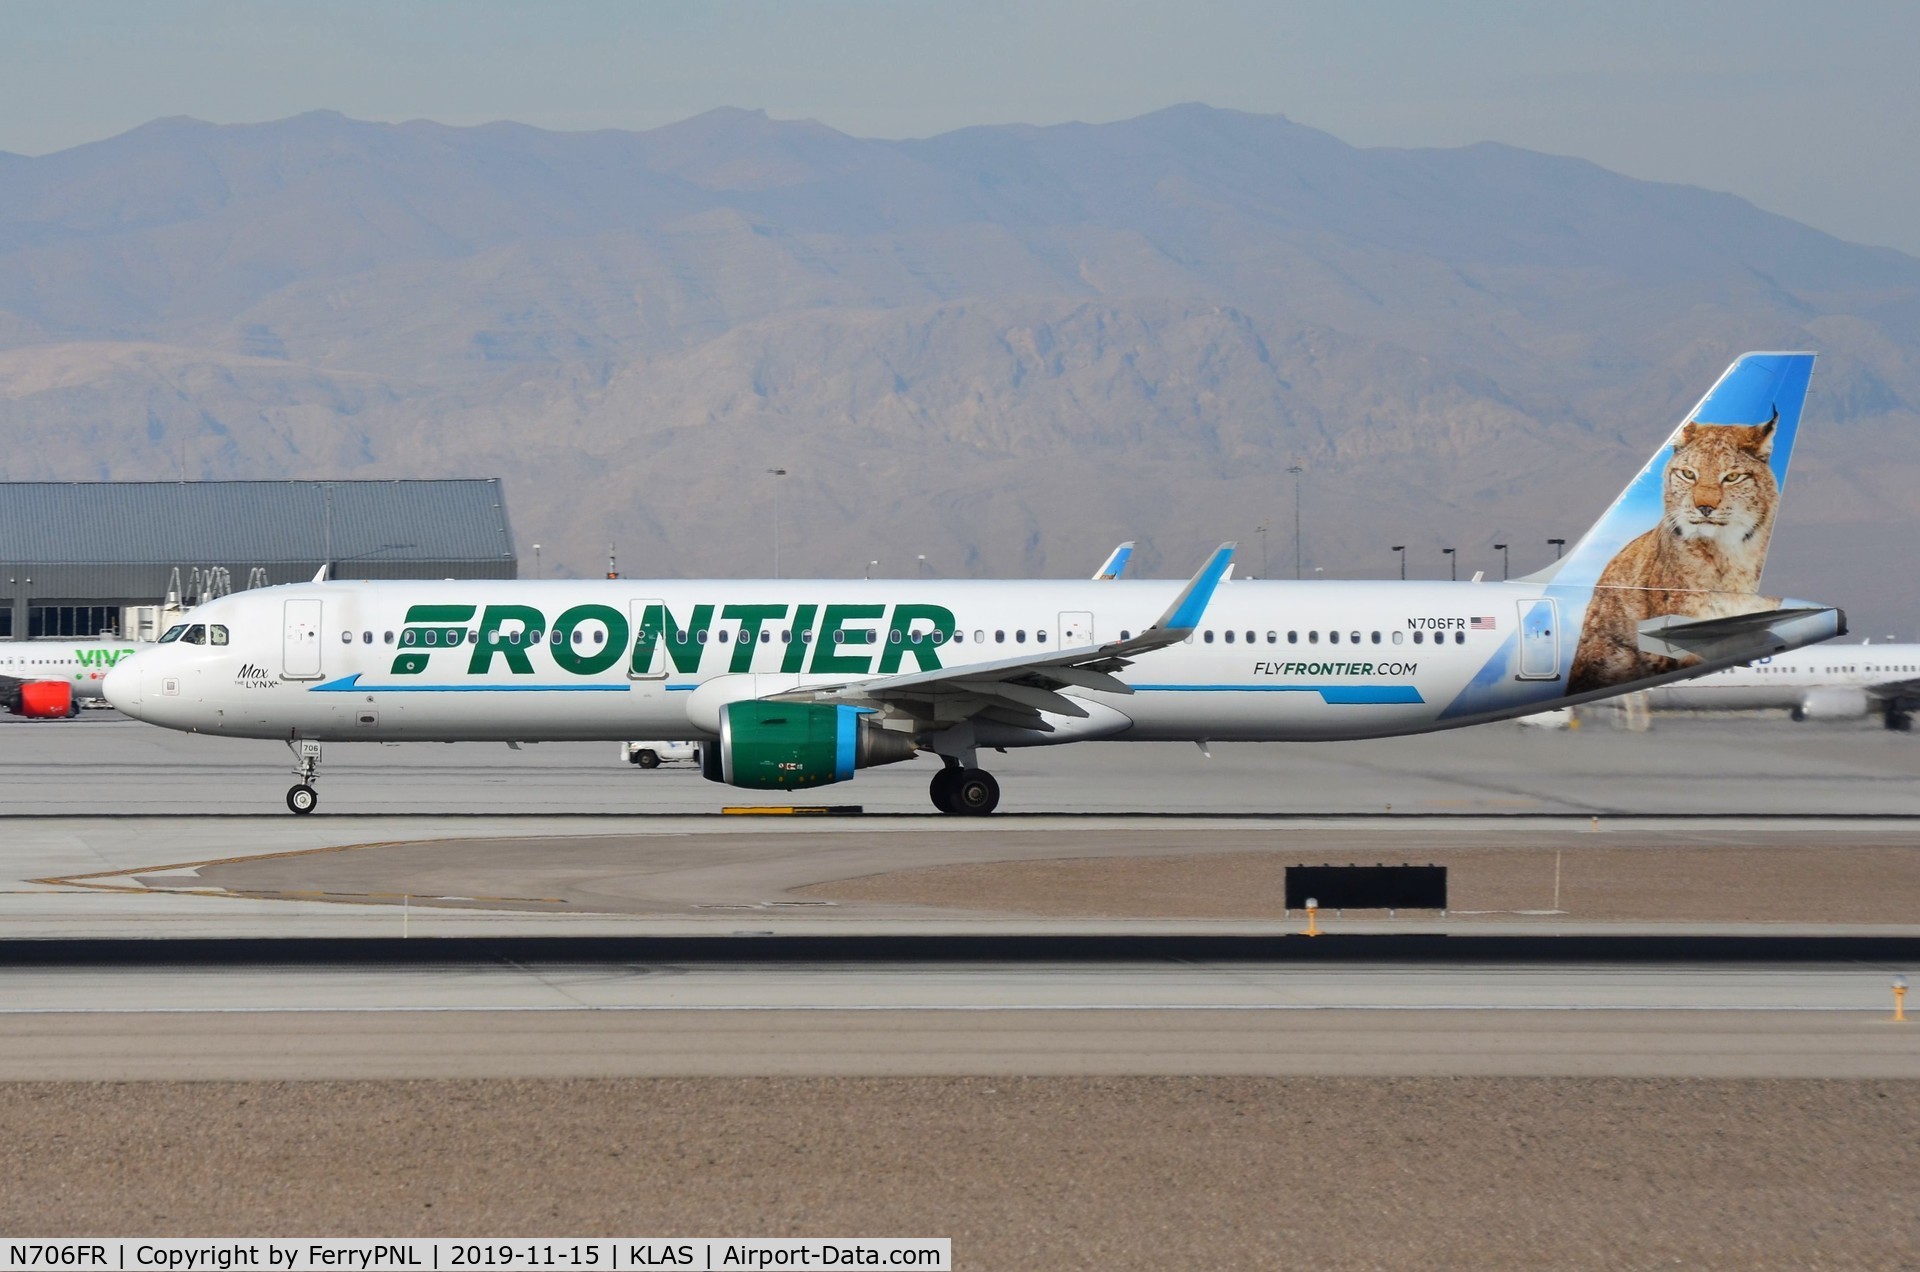 N706FR, 2015 Airbus A321-211 C/N 6926, Frontier A321 (Max) departing LAS